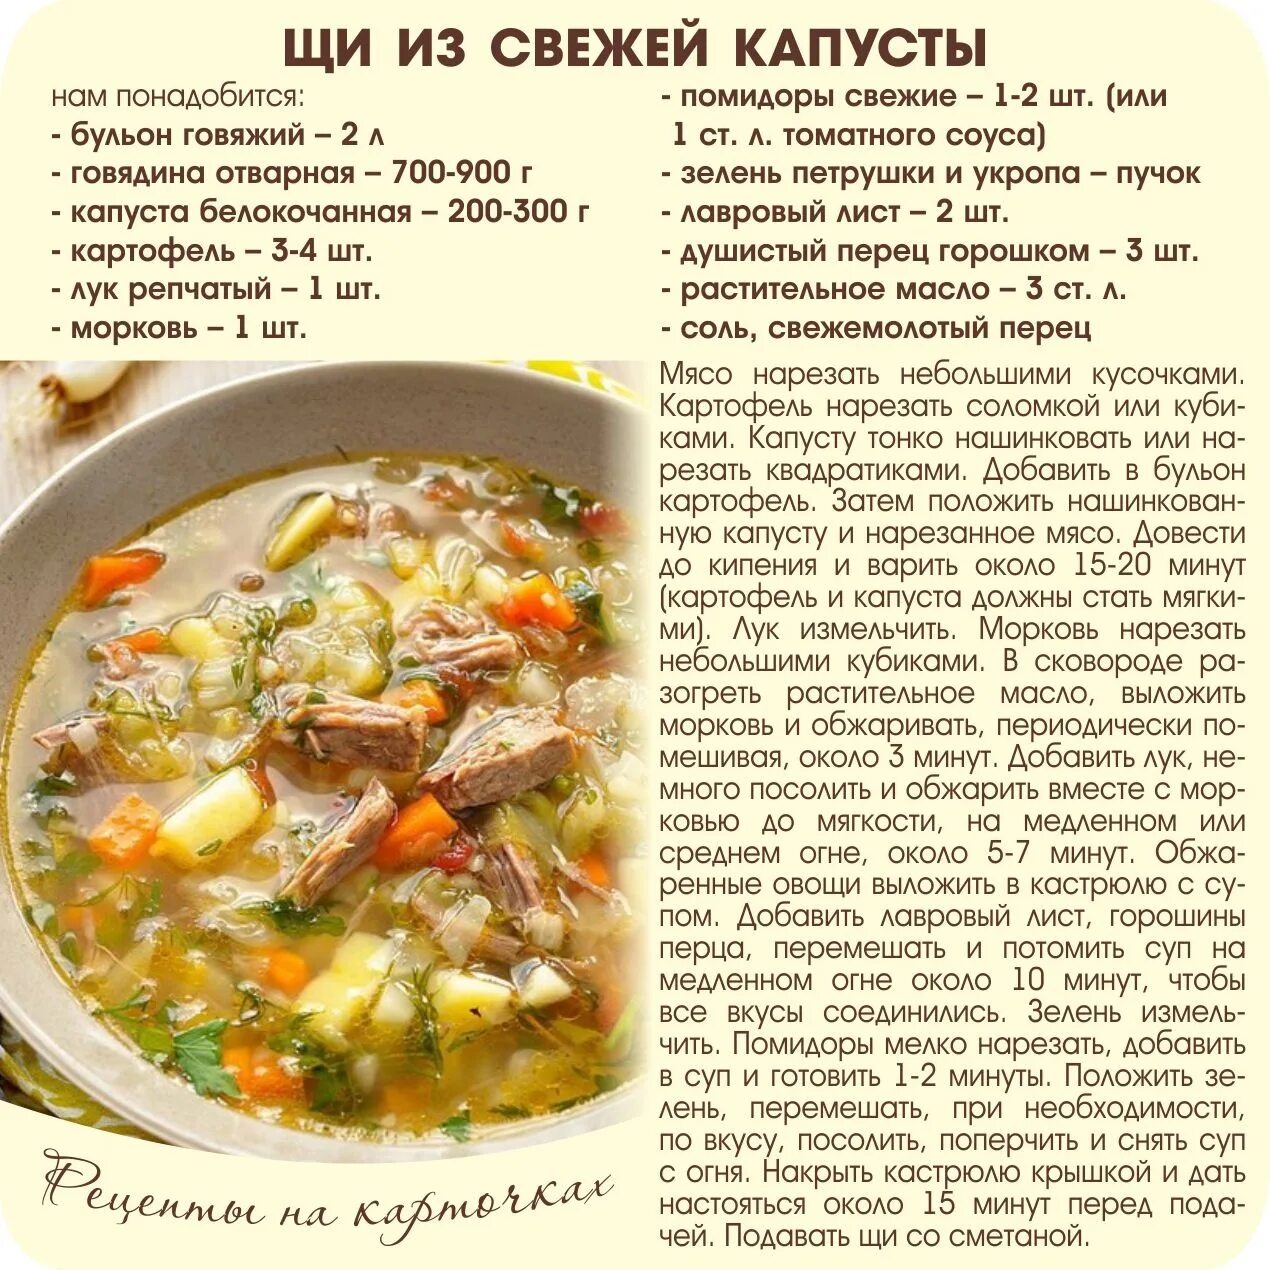 Рецепты блюд в картинках с описанием. Рецепт свежих щей. Рецепты на карточках. Рецепт приготовления супа.